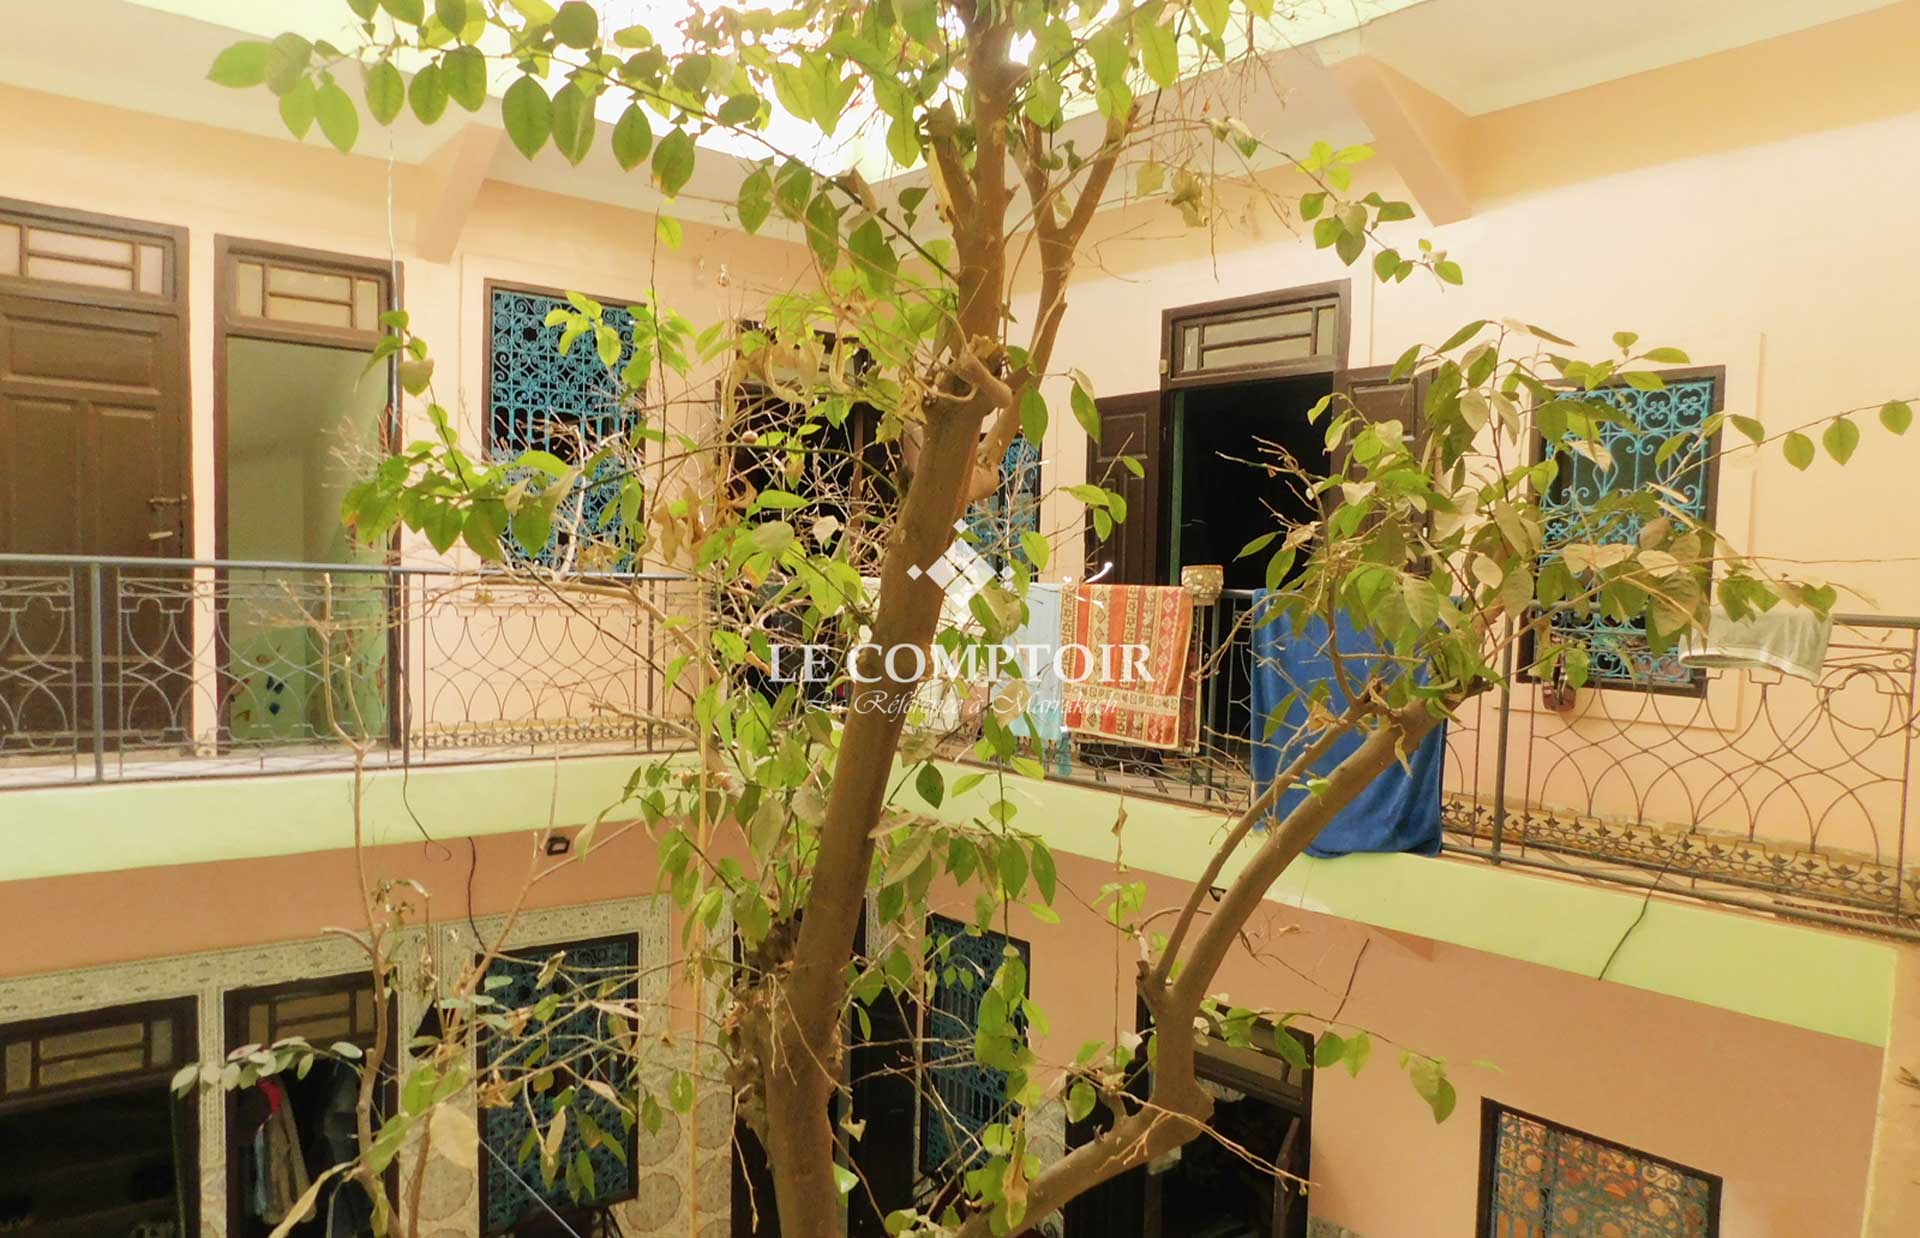 Le Comptoir Immobilier Agence Immobiliere Marrakech Vente Riad A Renover Derb Dabachi Medina Marrakech 4